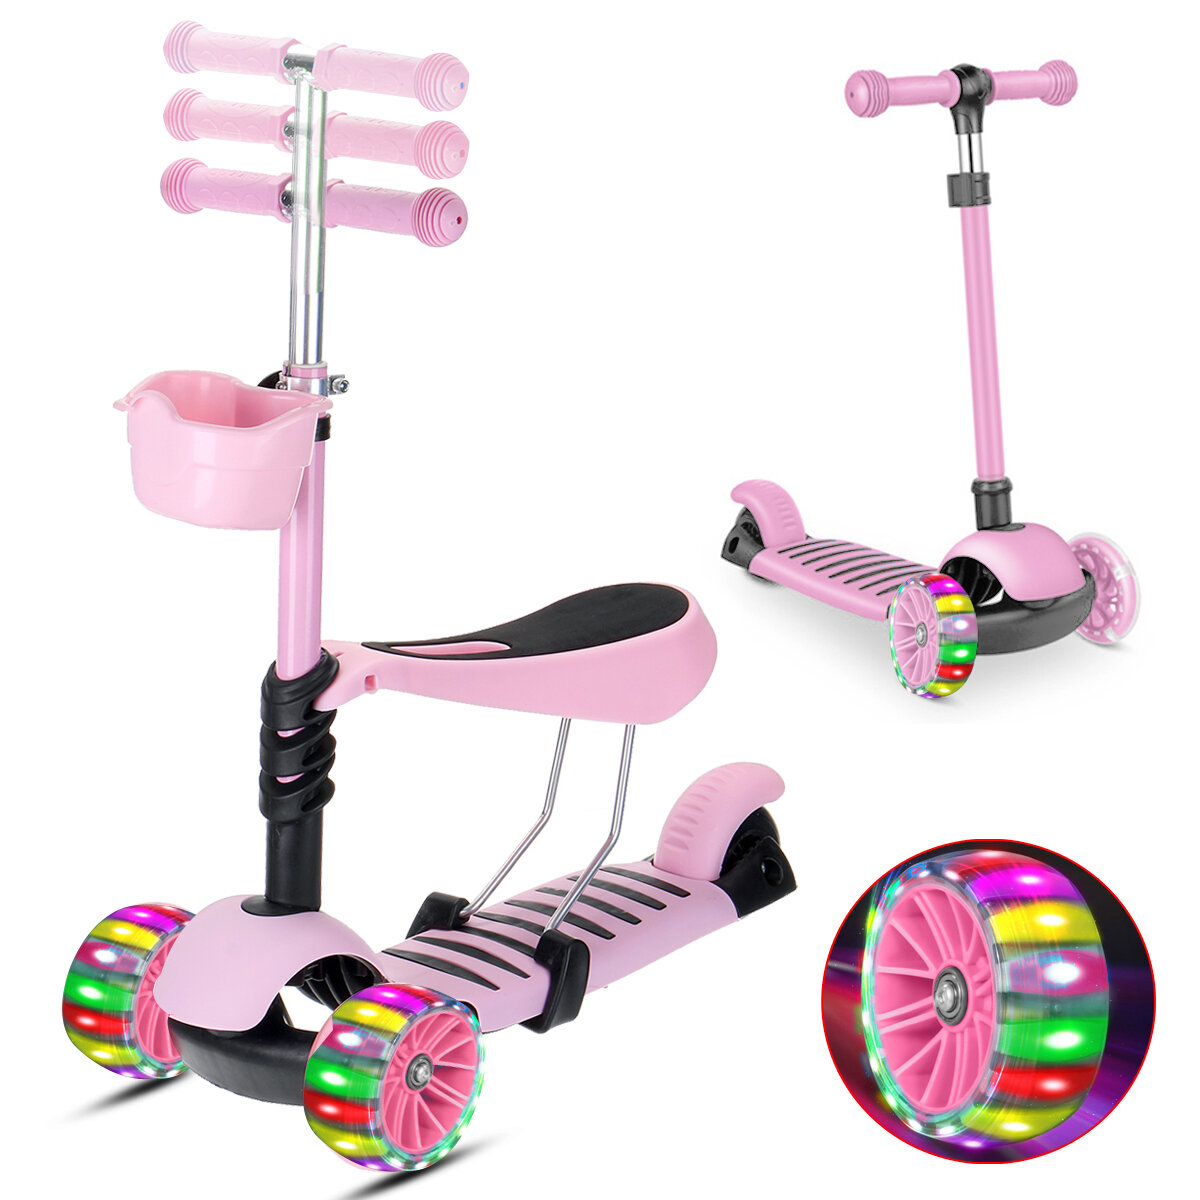 

2-в-1 LED Самокат Kick Kids 3 Мигающее колесо Регулируемая высота Балансировка Подарок для малышей